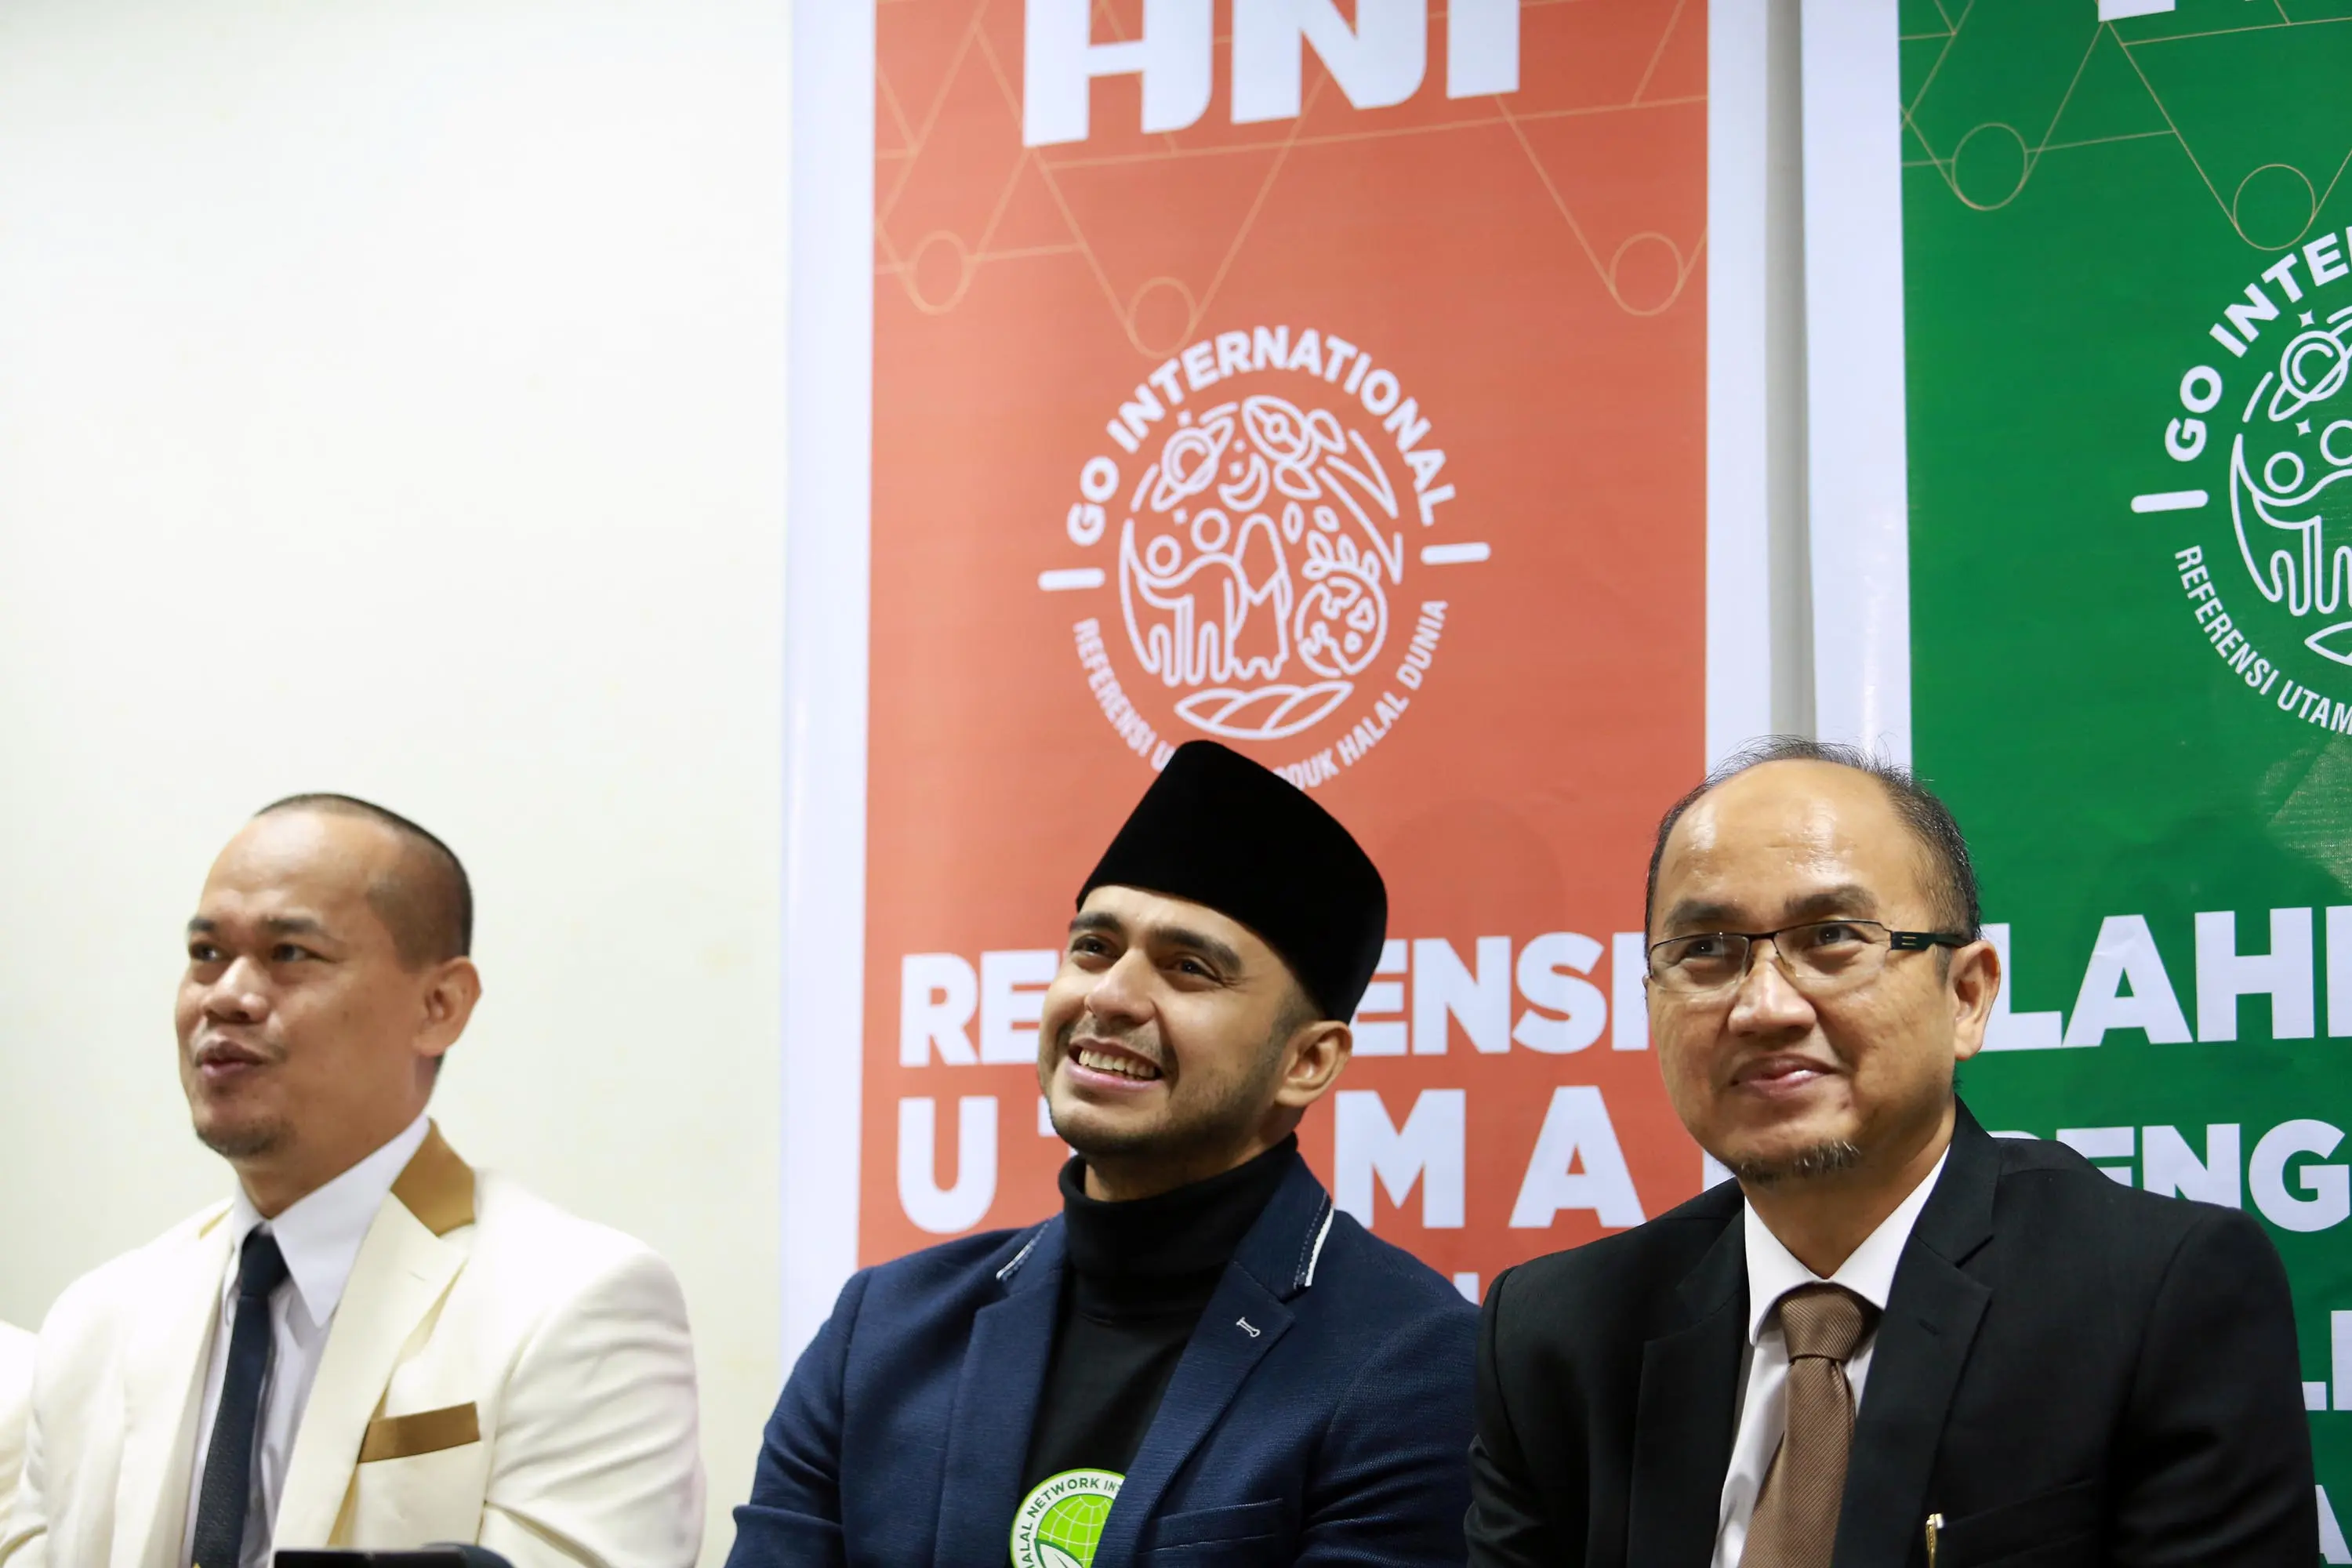 Ali Zainal bersama dengan Rofik Hananto ( direktur marketing & operasional) serta Agung Yuliato (presiden direktur) saat ditemui di SICC, Bogor, Jawa Barat, Minggu (9/4/2017)